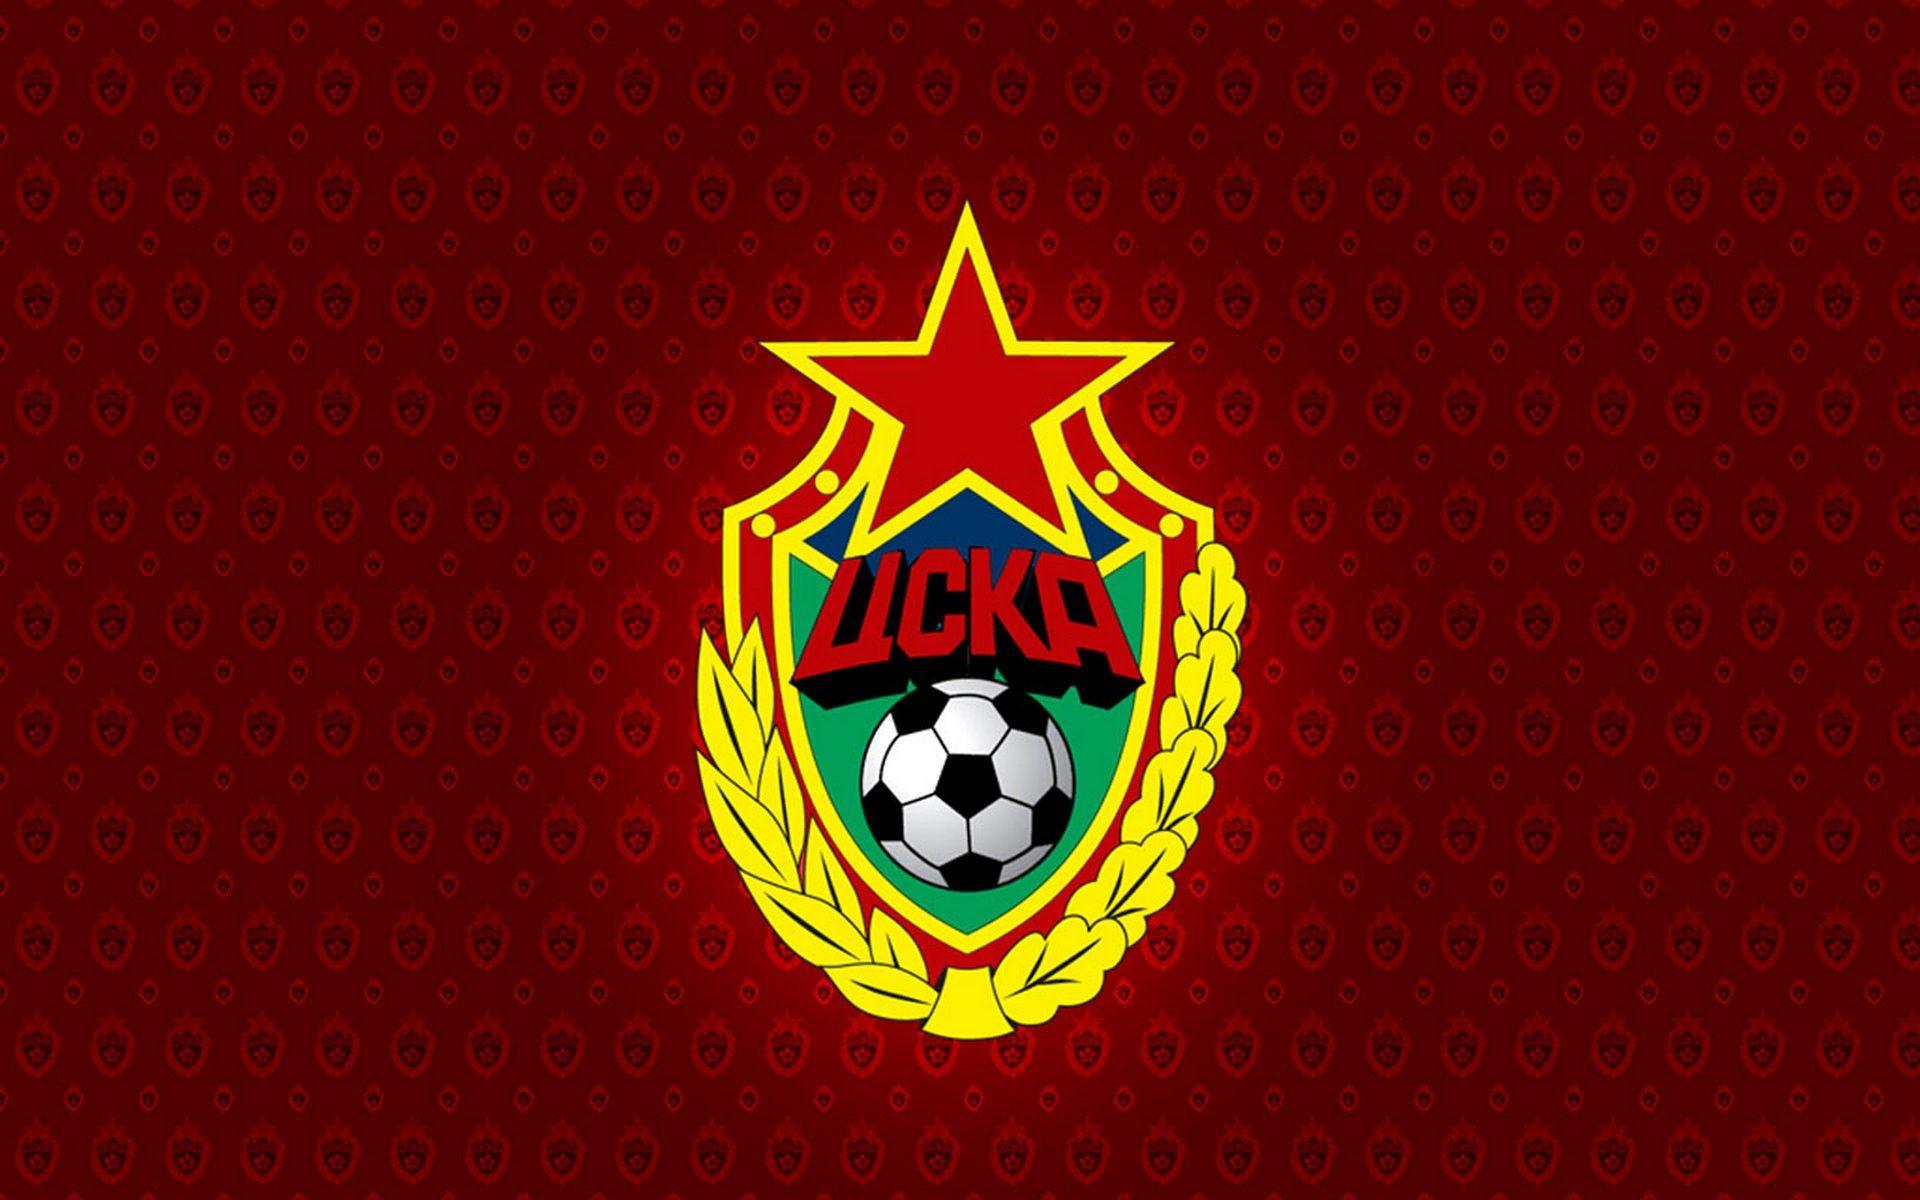 PFC CSKA Moscow wallpaper